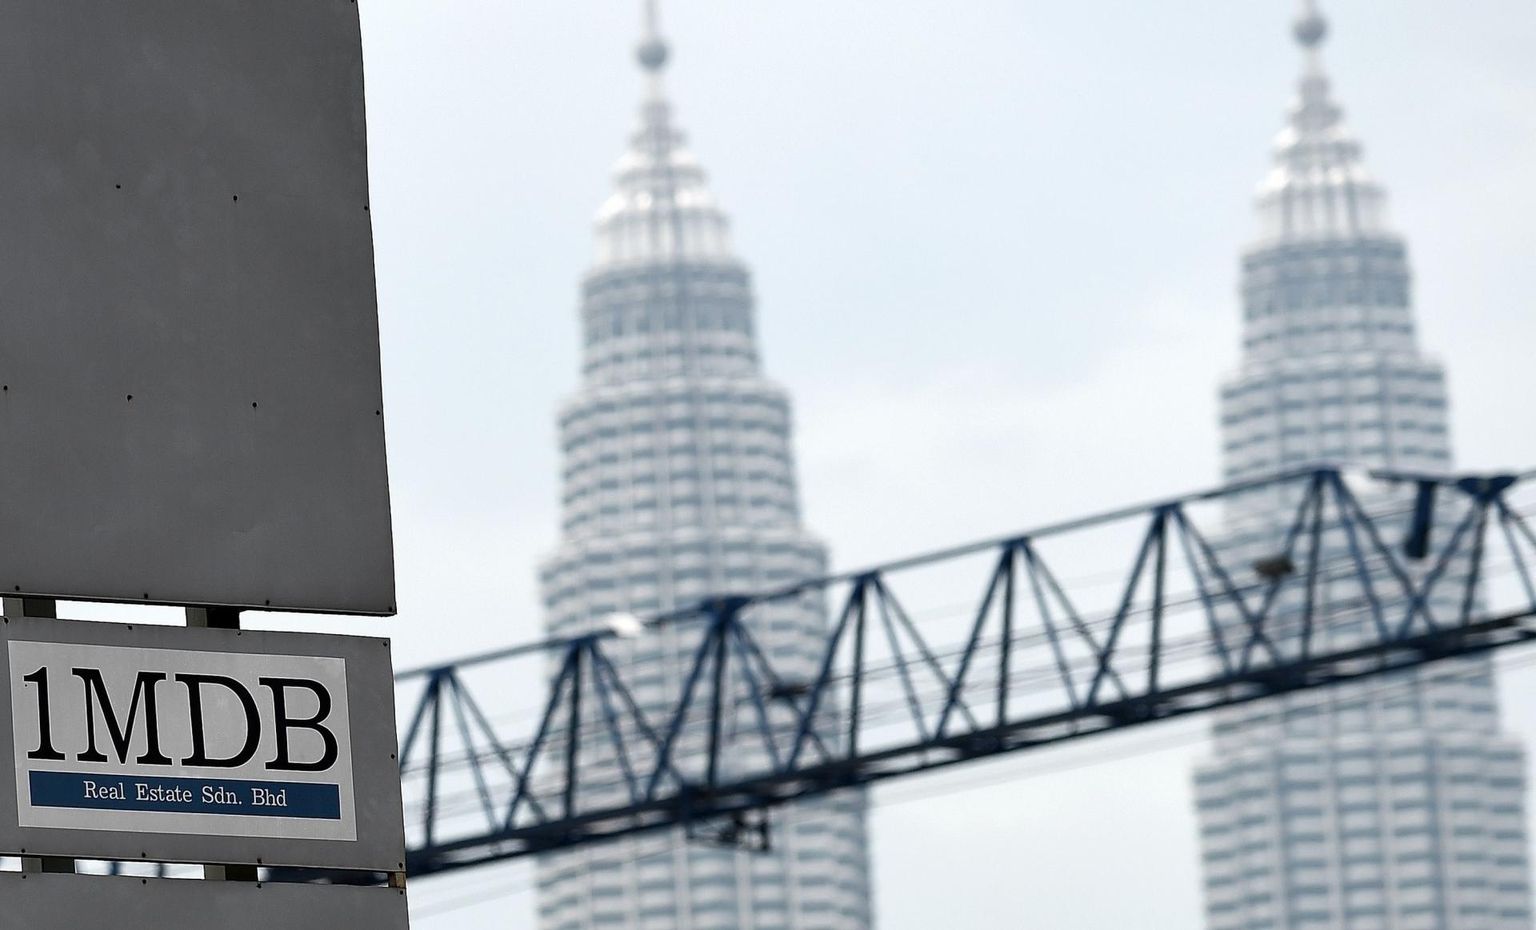 Malaisia riikliku investeerimisfondi 1MDB skandaali tõttu on Goldman Sachs pidanud maksma üle kuue miljardi dollari trahvi. 